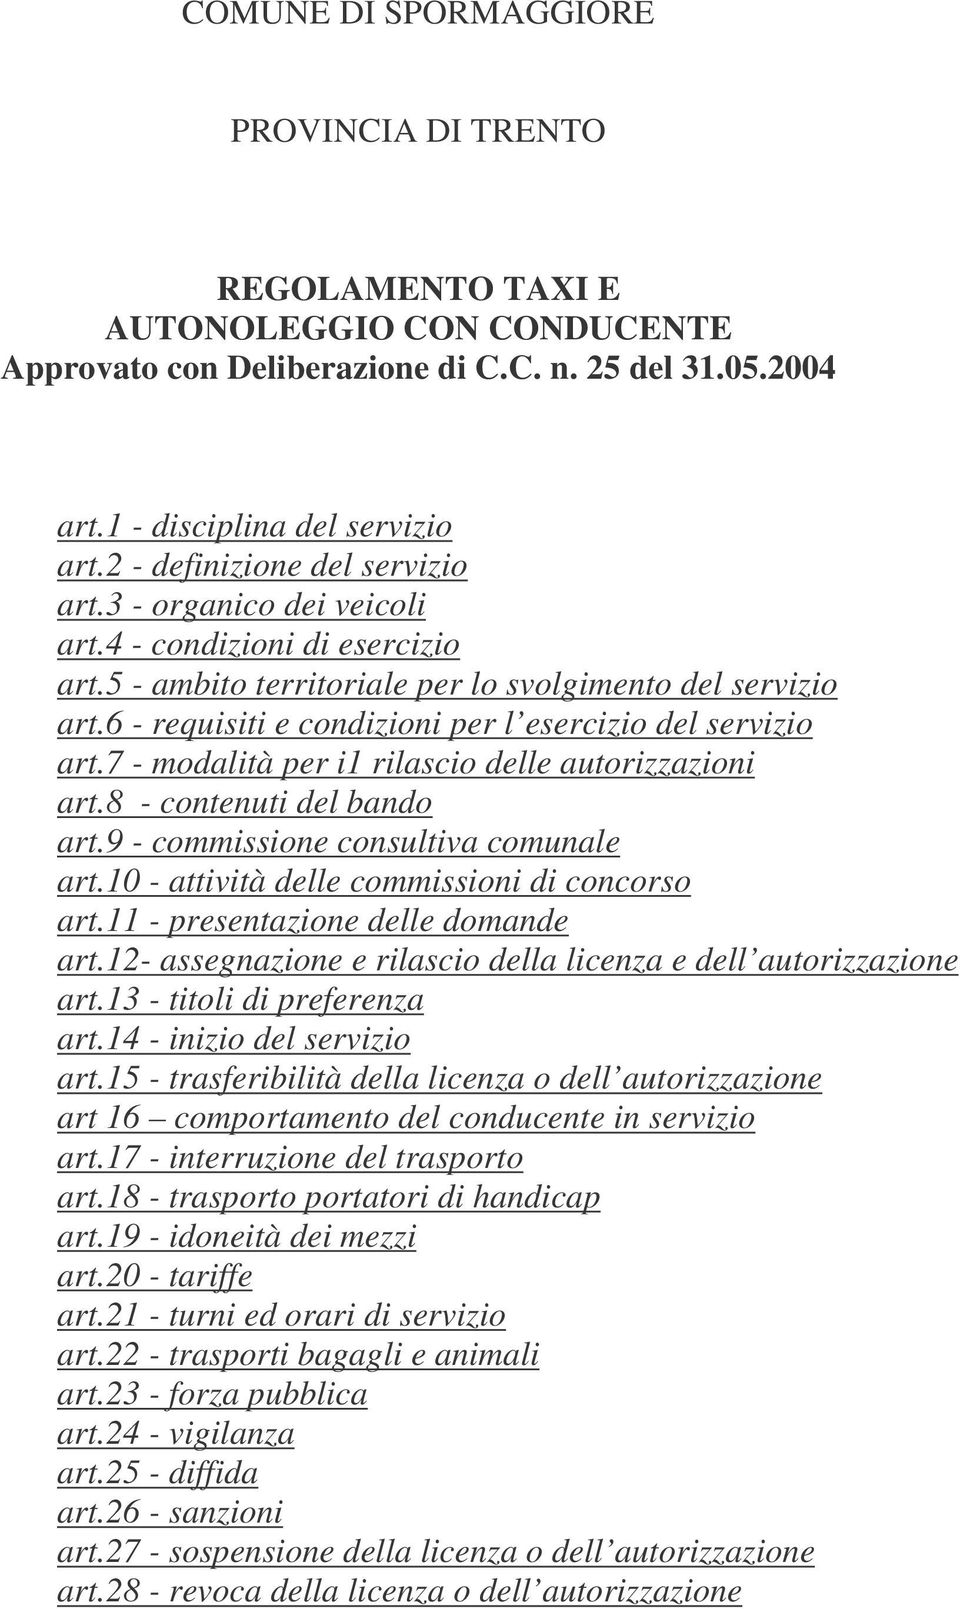 6 - requisiti e condizioni per l esercizio del servizio art.7 - modalità per i1 rilascio delle autorizzazioni art.8 - contenuti del bando art.9 - commissione consultiva comunale art.